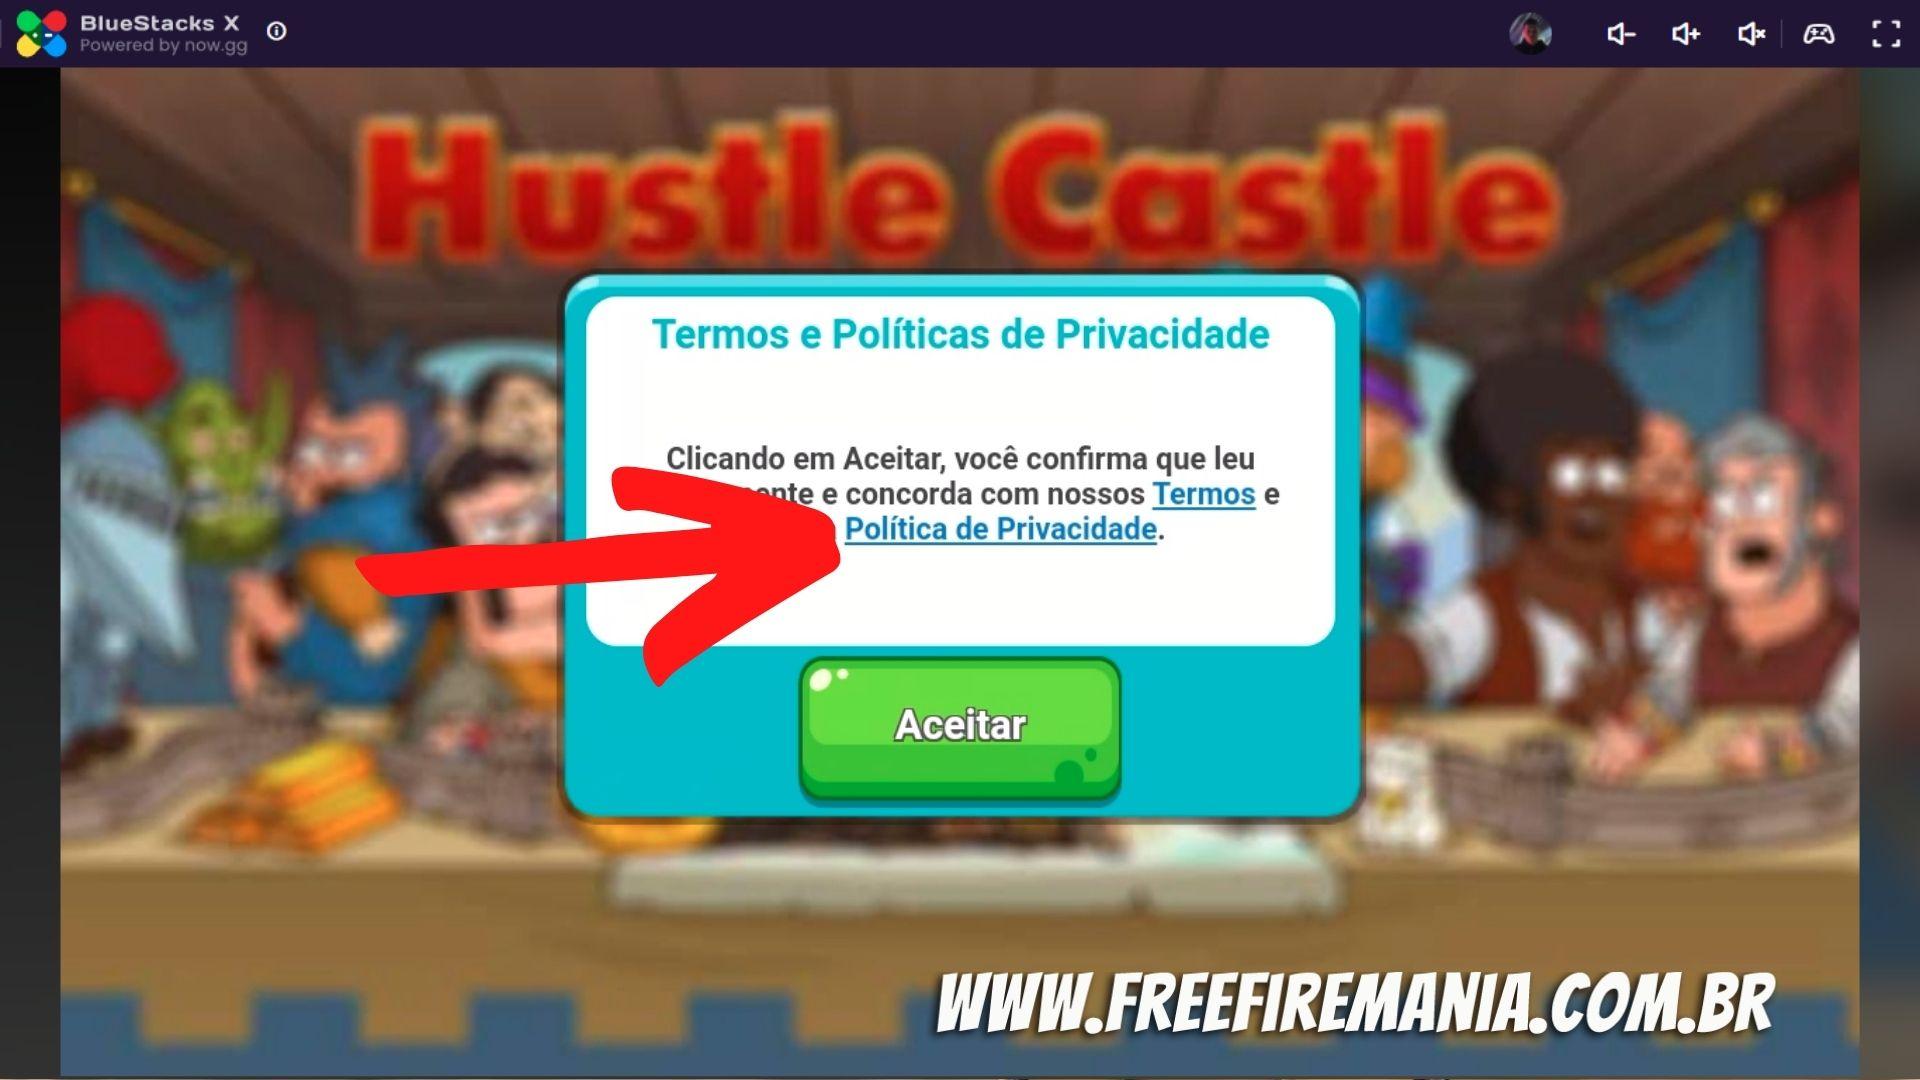 Free Fire: así puedes jugar sin instalar nada en tu PC – Publimetro Chile